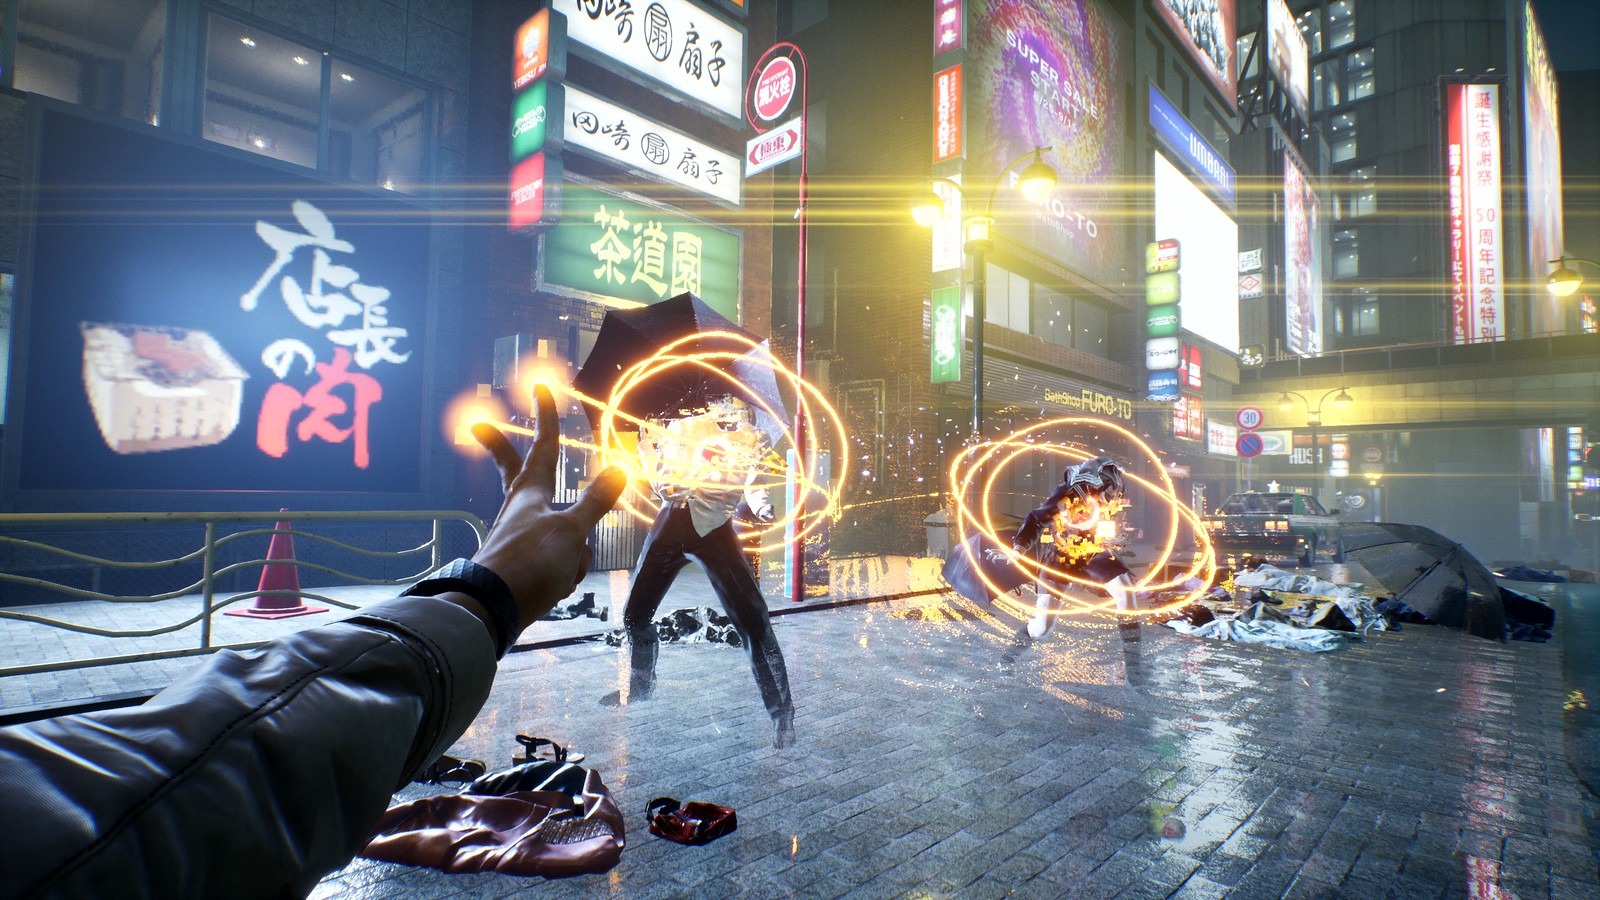 آکیتو در بازی Ghostwire: Tokyo با جادو به دشمنان حمله می کند.